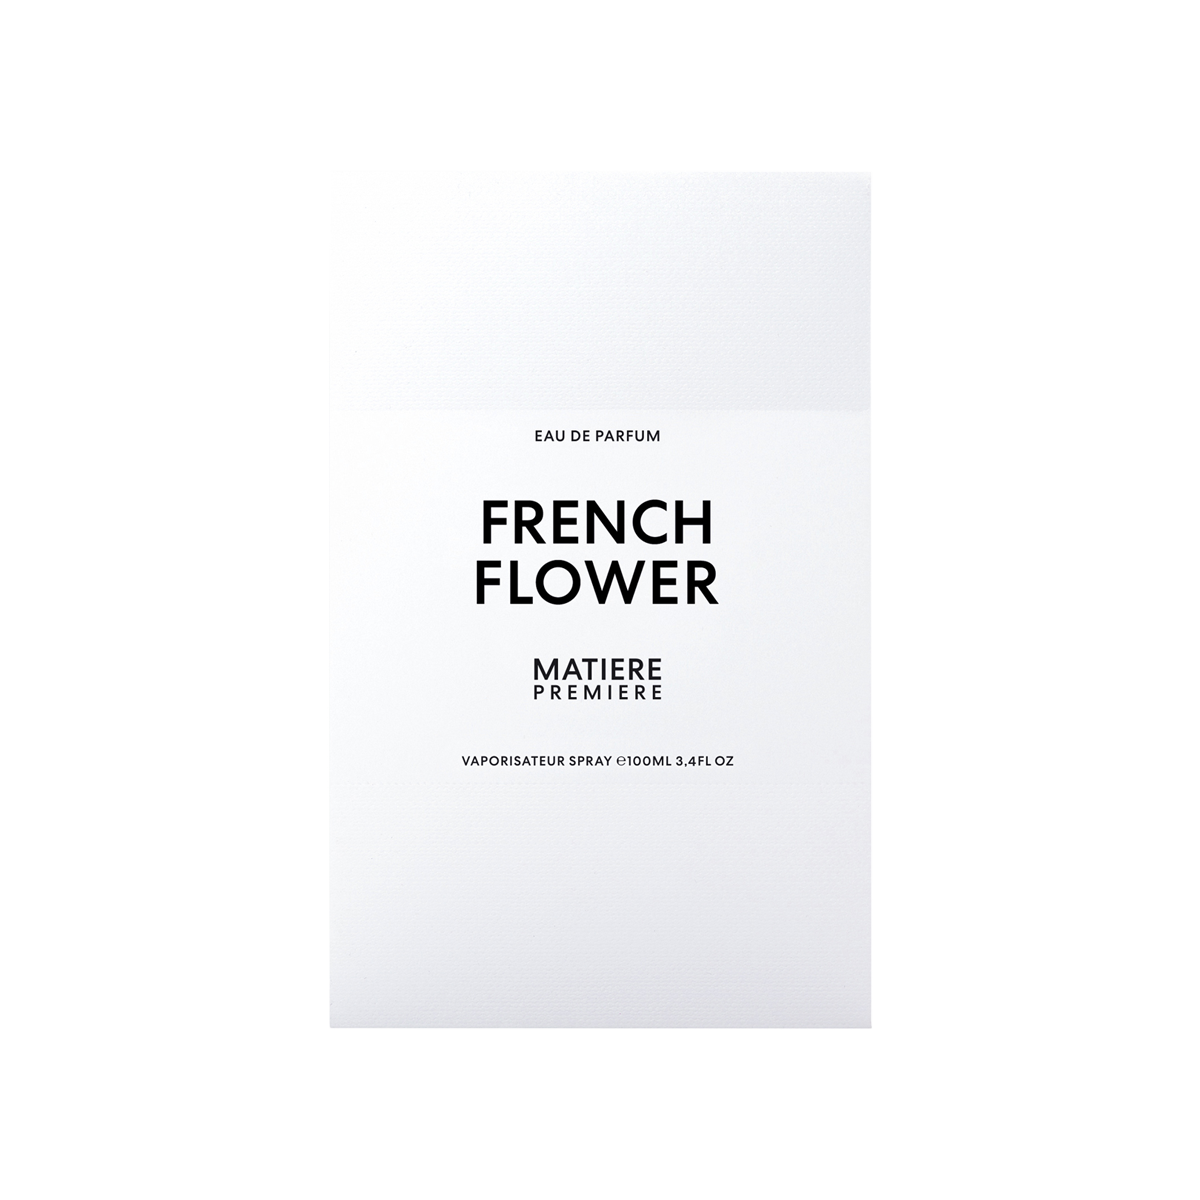 Matiere Premiere - French Flower Eau De Parfum